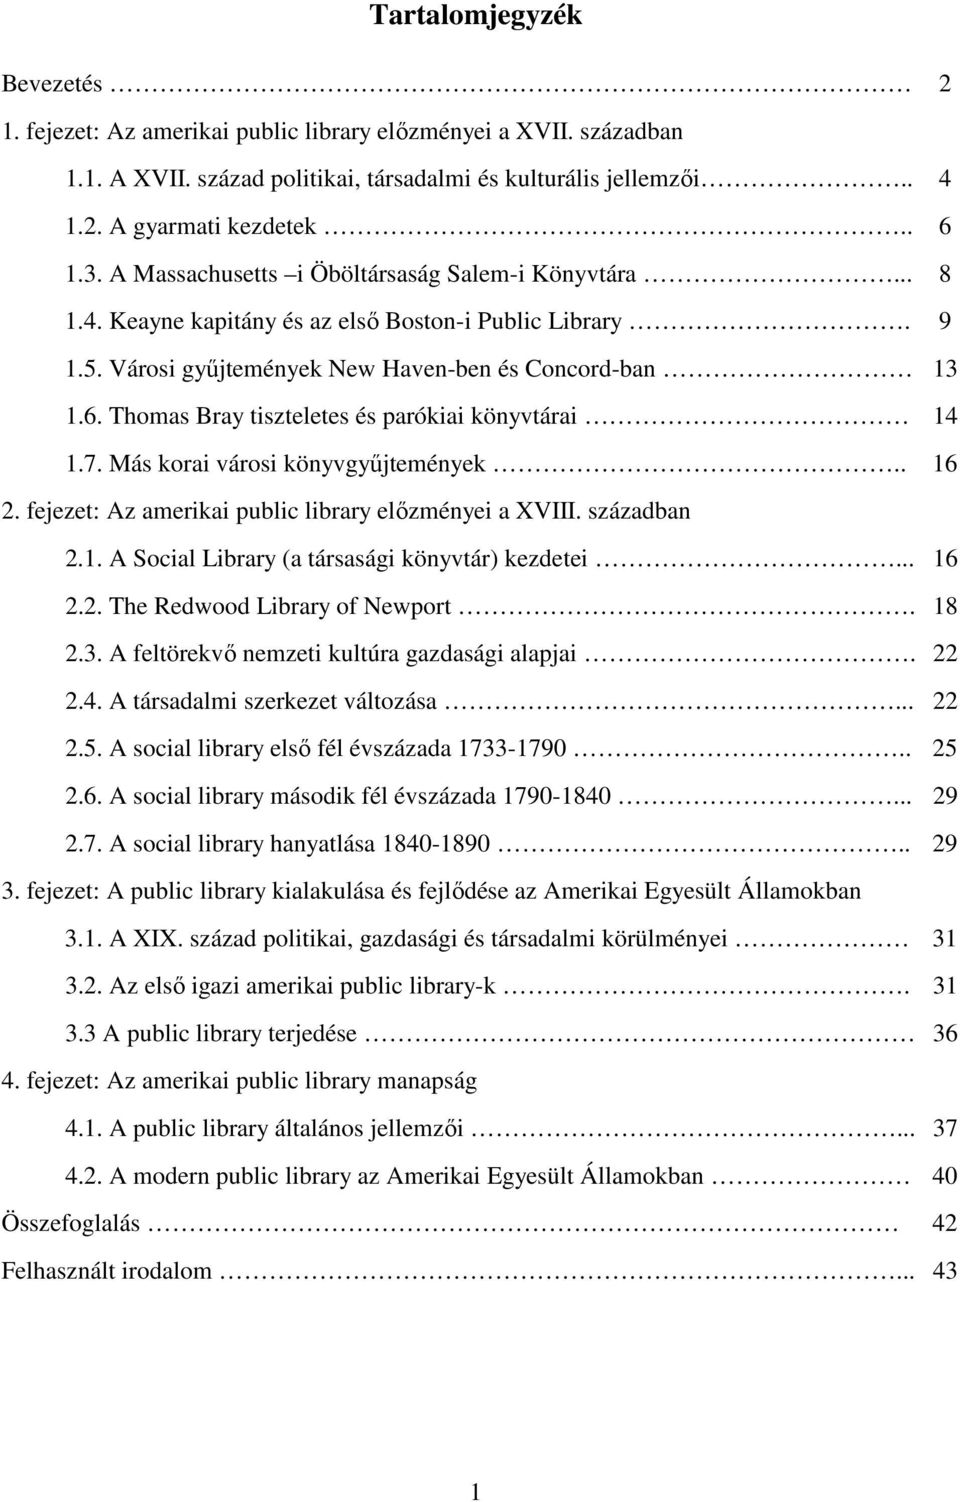 Thomas Bray tiszteletes és parókiai könyvtárai 14 1.7. Más korai városi könyvgyőjtemények.. 16 2. fejezet: Az amerikai public library elızményei a XVIII. században 2.1. A Social Library (a társasági könyvtár) kezdetei.